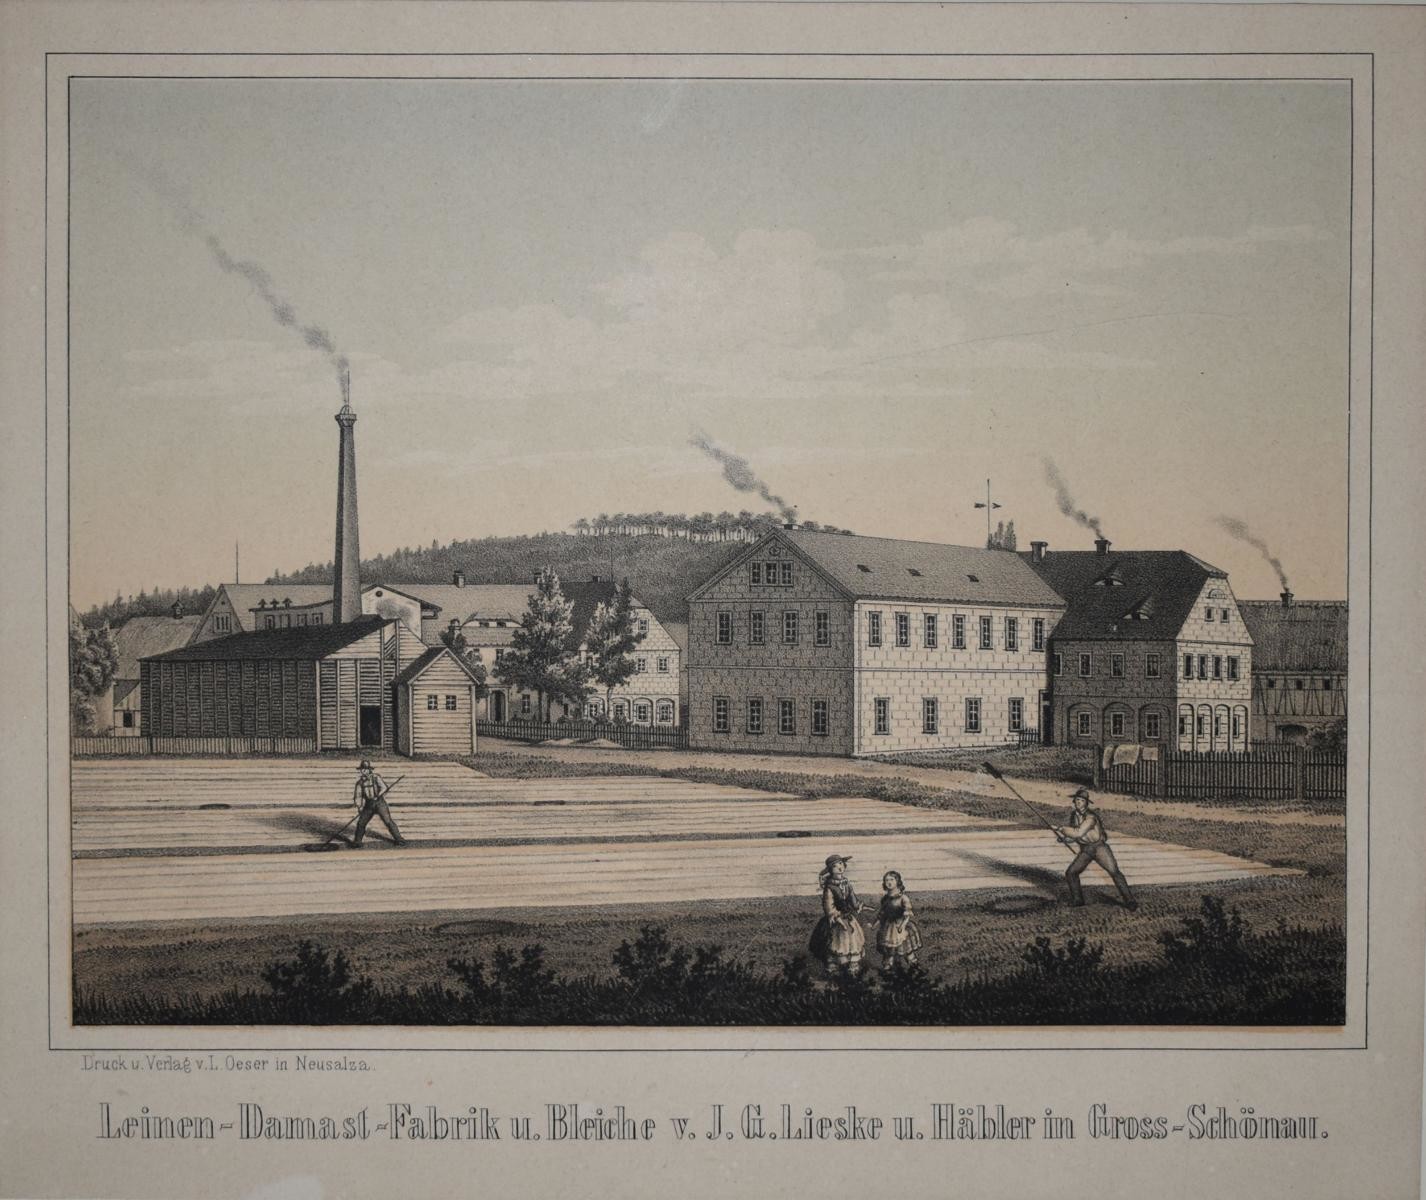 Leinen-Damast-Fabrik und Bleiche von J. G. Lieske und Häbler (Deutsches Damast- und Frottiermuseum CC BY-NC-ND)